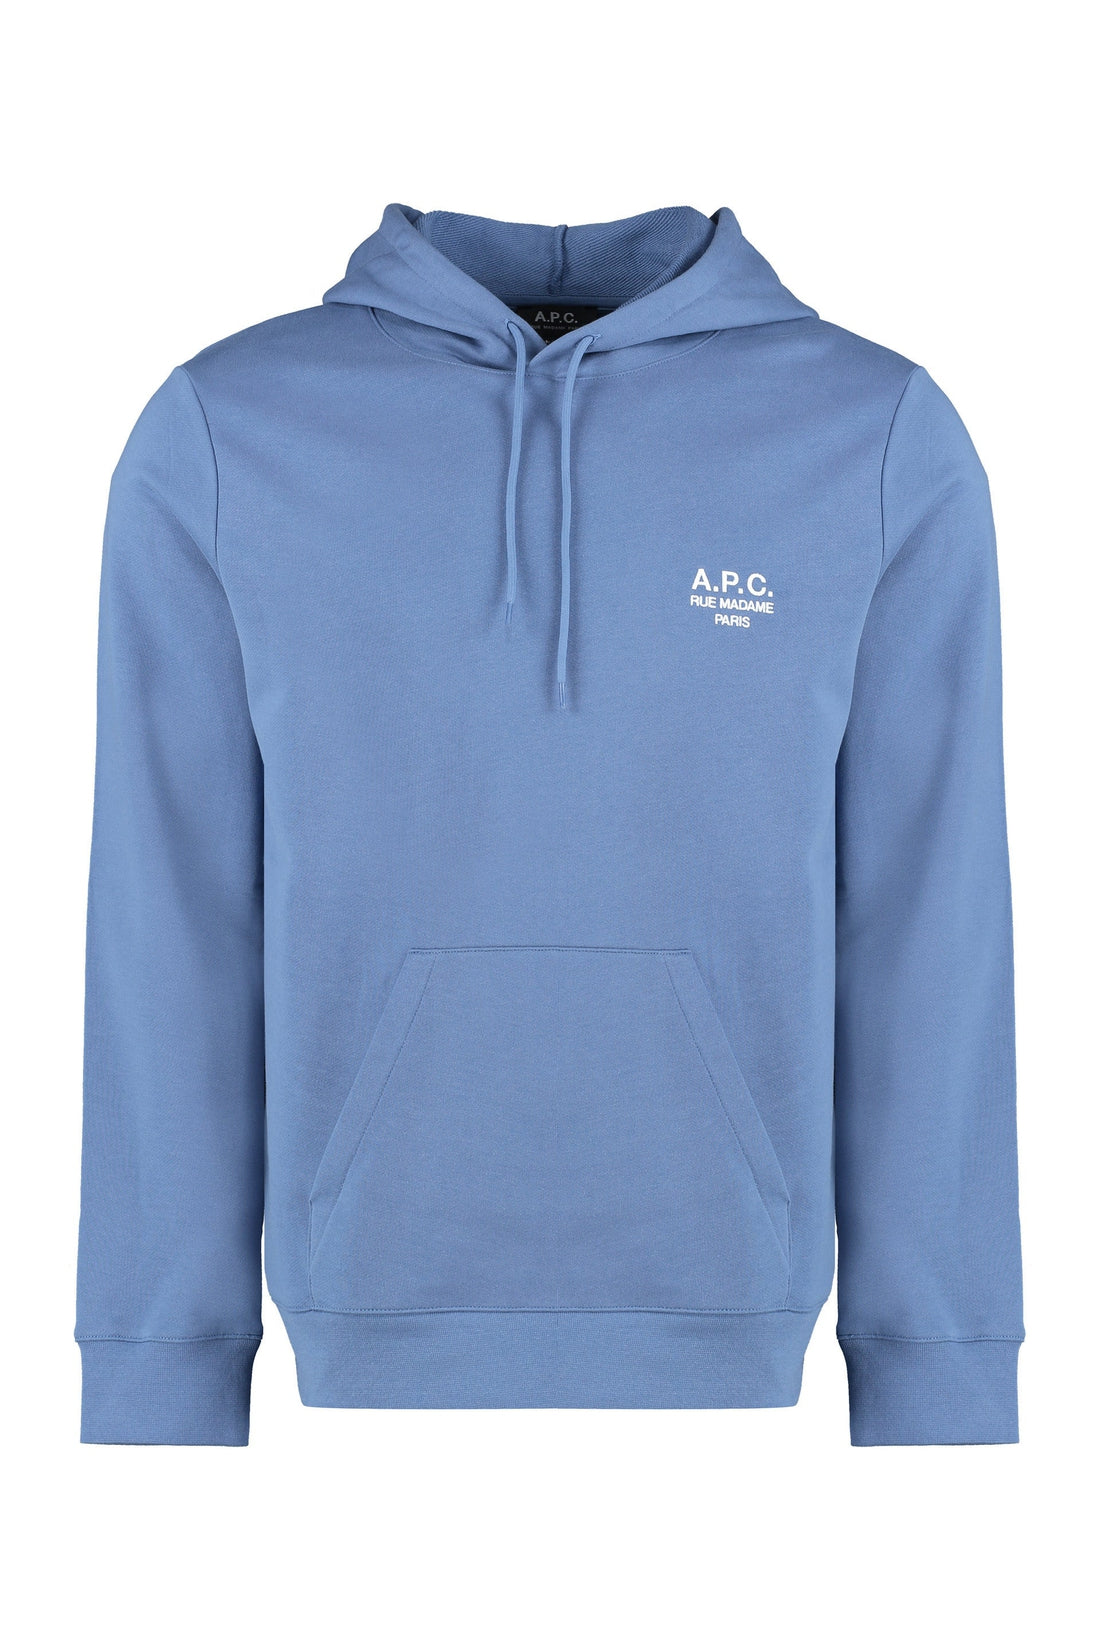 A.P.C.-OUTLET-SALE-Cotton hoodie-ARCHIVIST